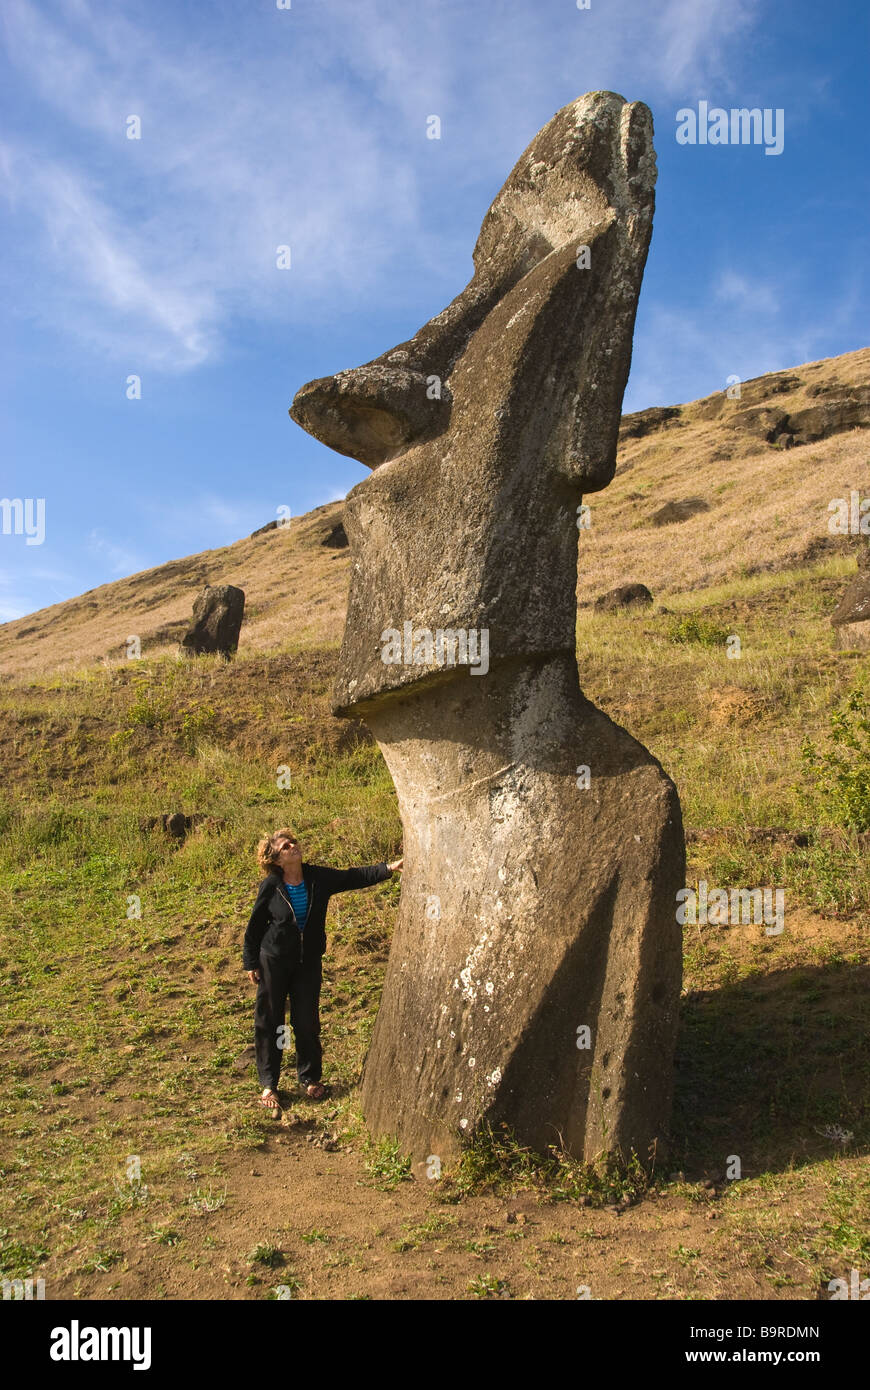 Elk198 5280v Cile Isola di Pasqua Rano Raraku moai statue con donna Foto Stock